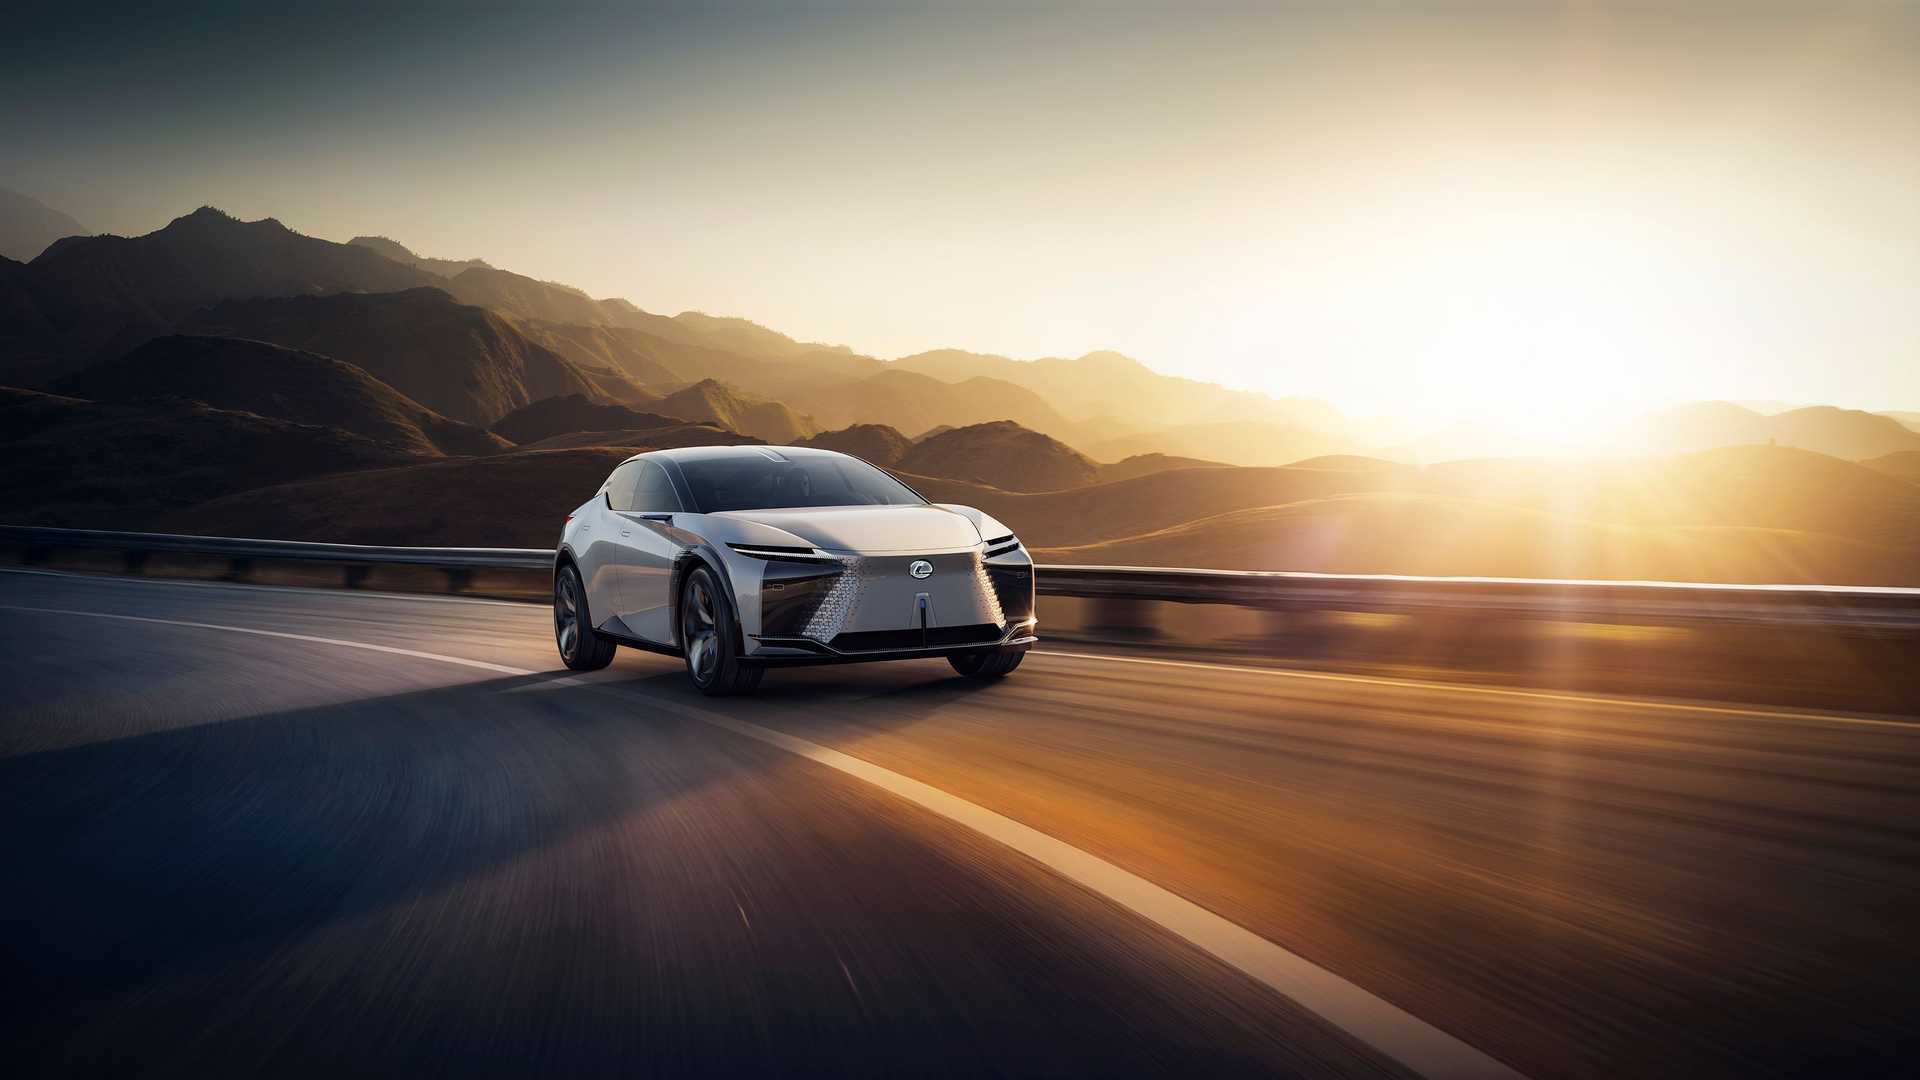 خودروی مفهومی و برقی لکسوس / Lexus LF-Z Electrified Concept EV سفید رنگ در جاده با منظره طلوع آفتاب